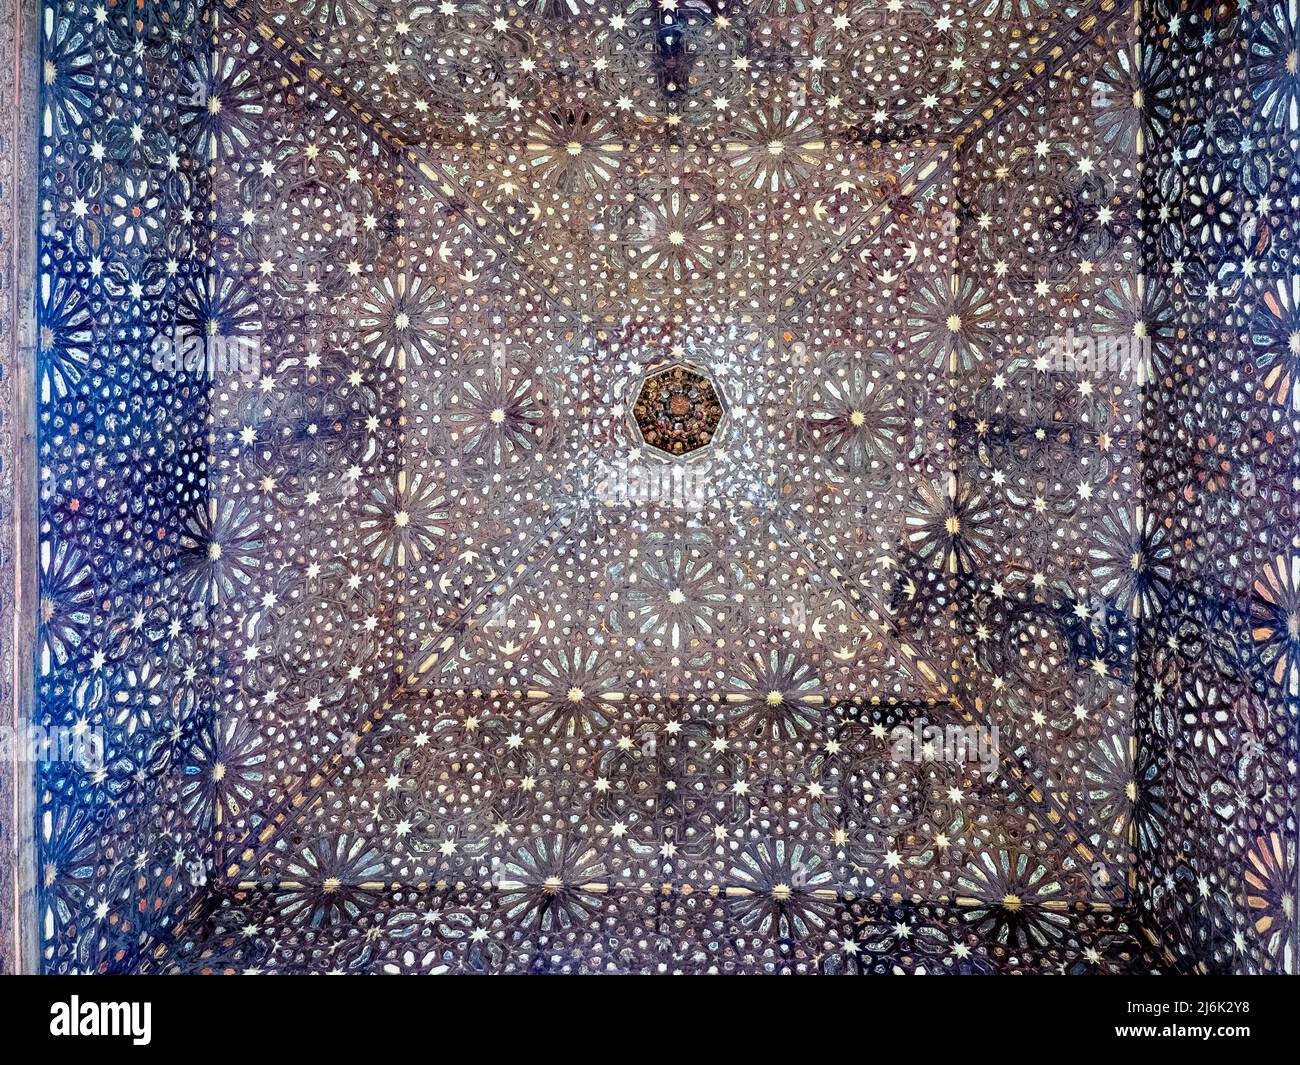 Dôme en bois du Hall des Ambassadeurs à Comares Palais du complexe des palais royaux de Nasrid - complexe de l'Alhambra - Grenade, Espagne Banque D'Images